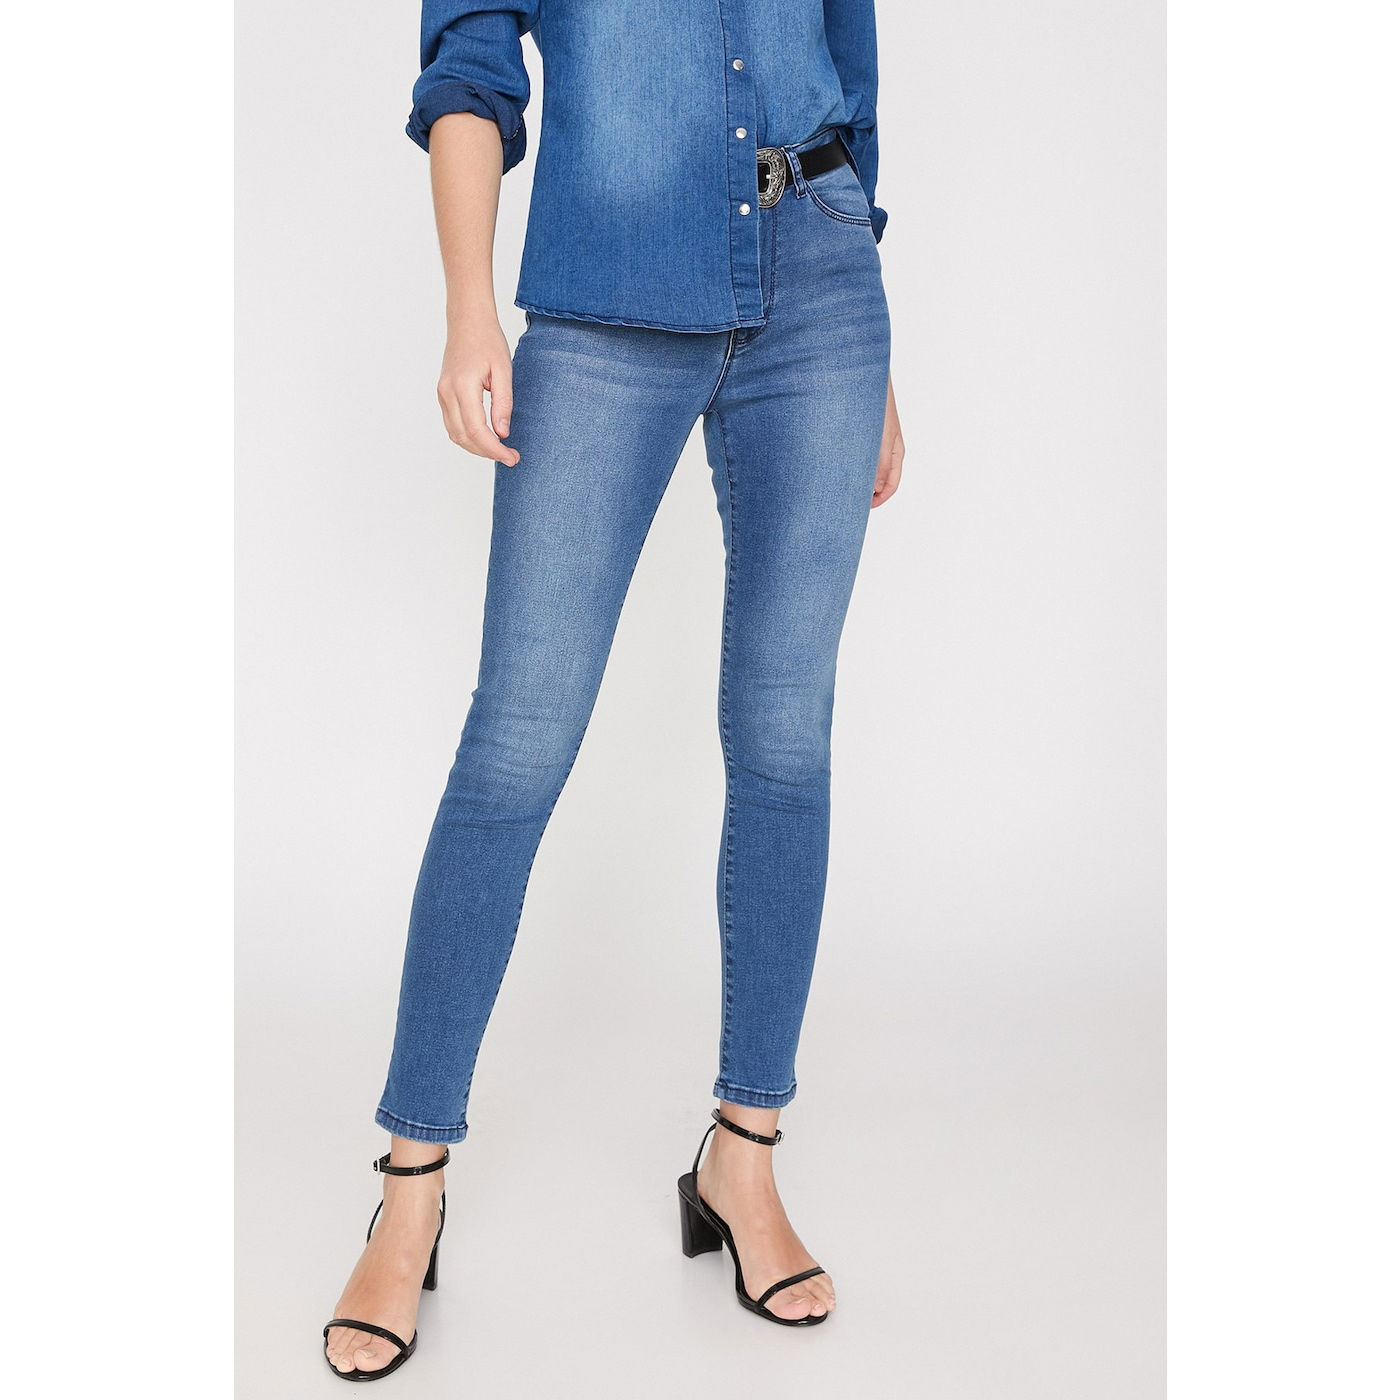 Koton Women Blue Jean